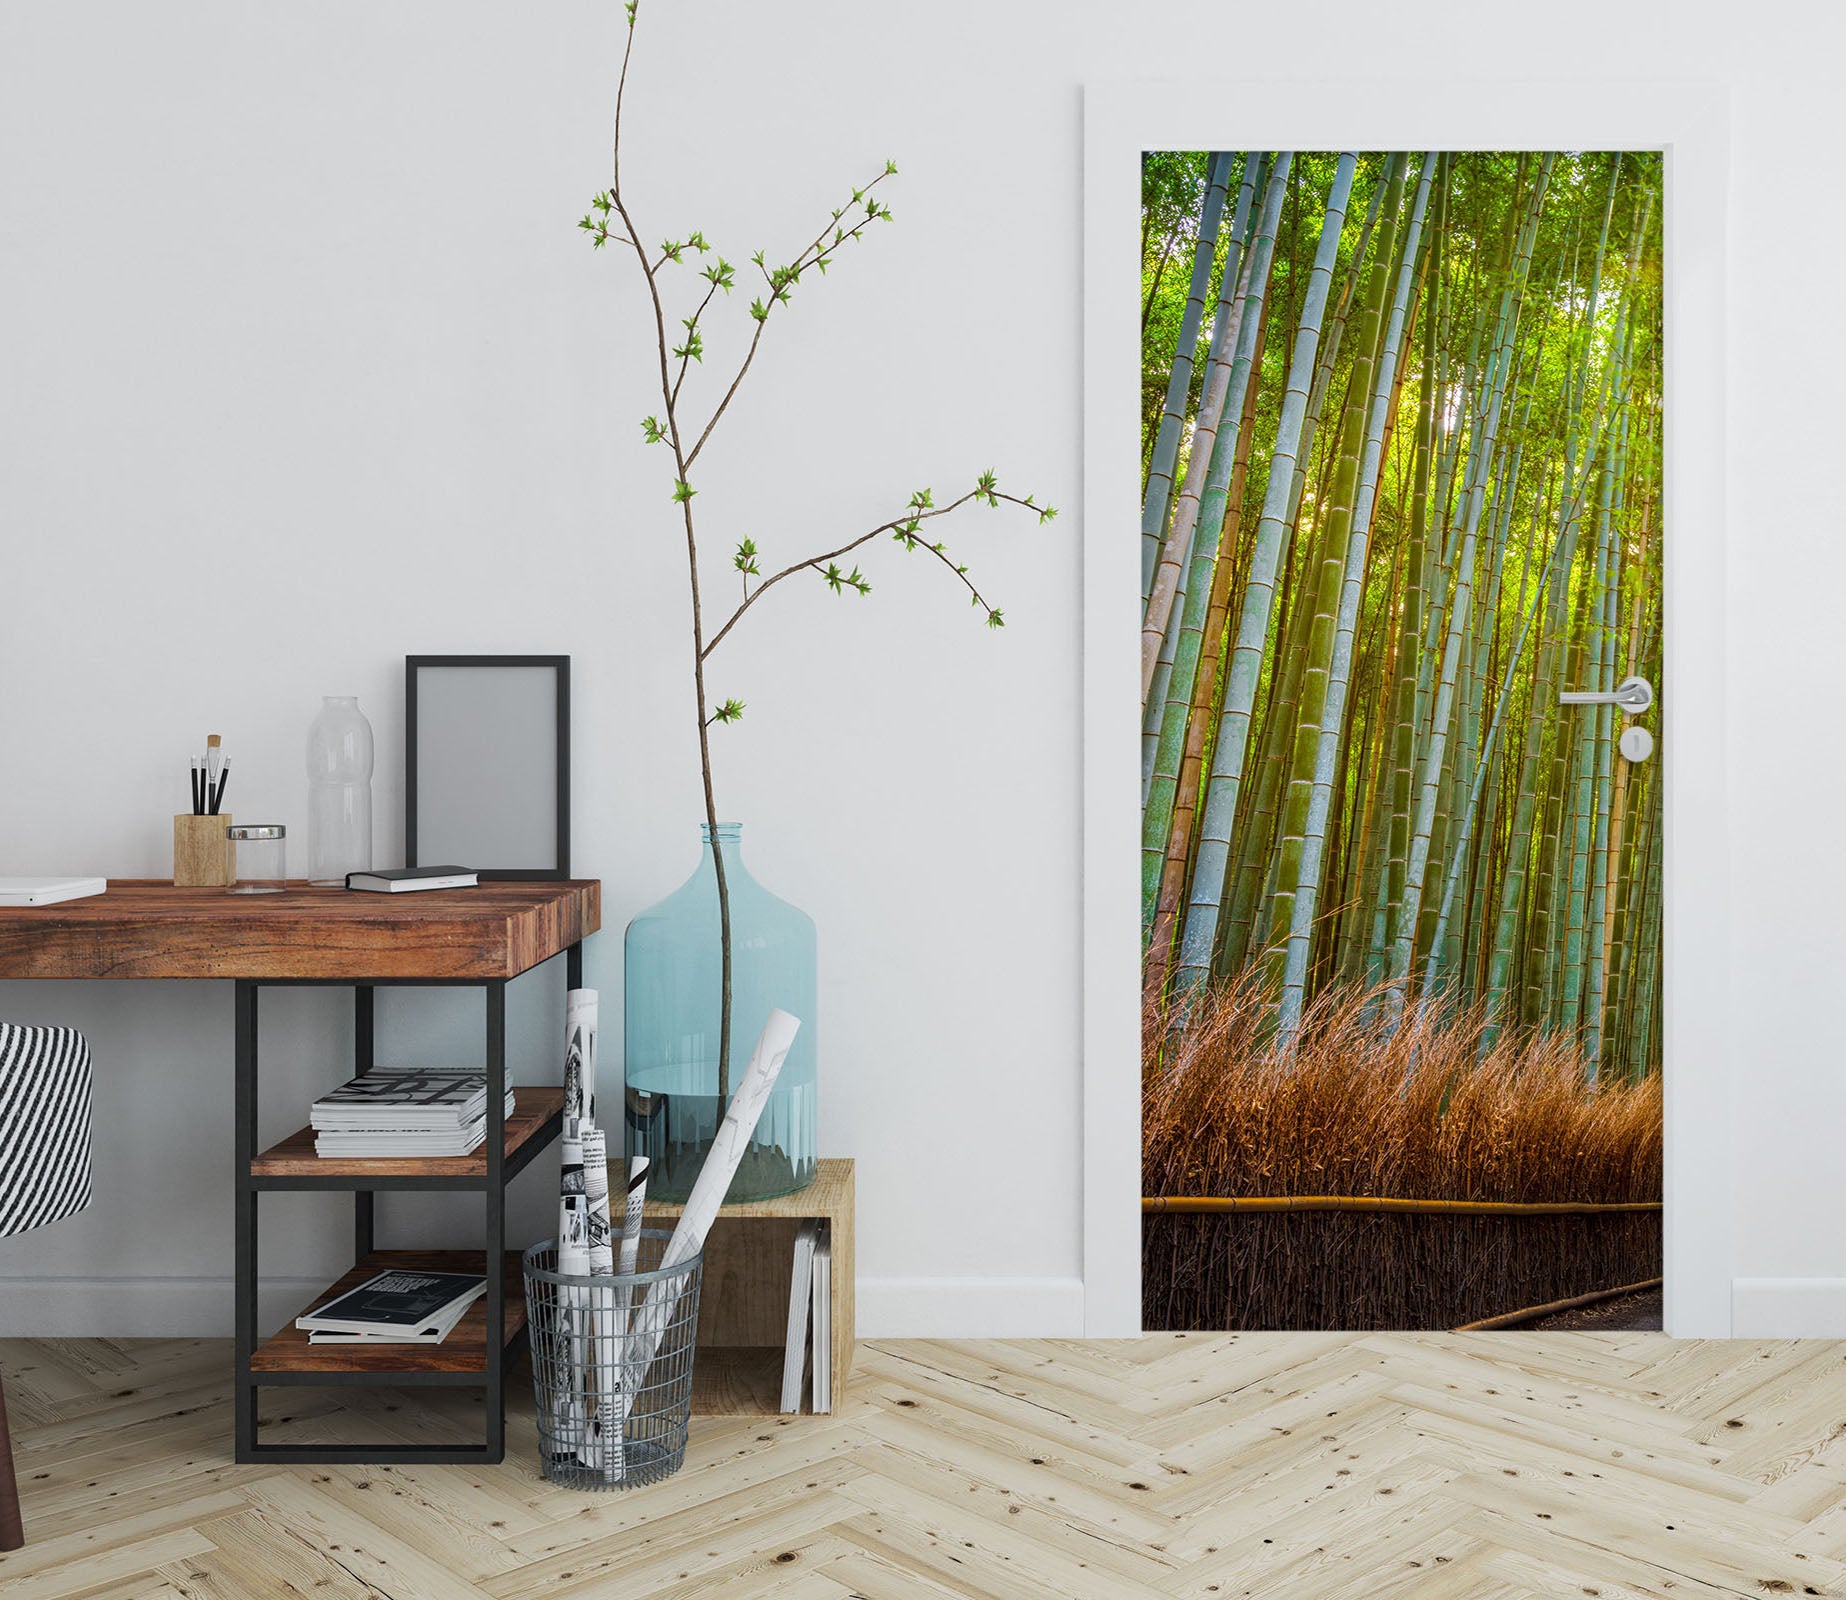 3D Bamboo Forest 11498 Marco Carmassi Door Mural